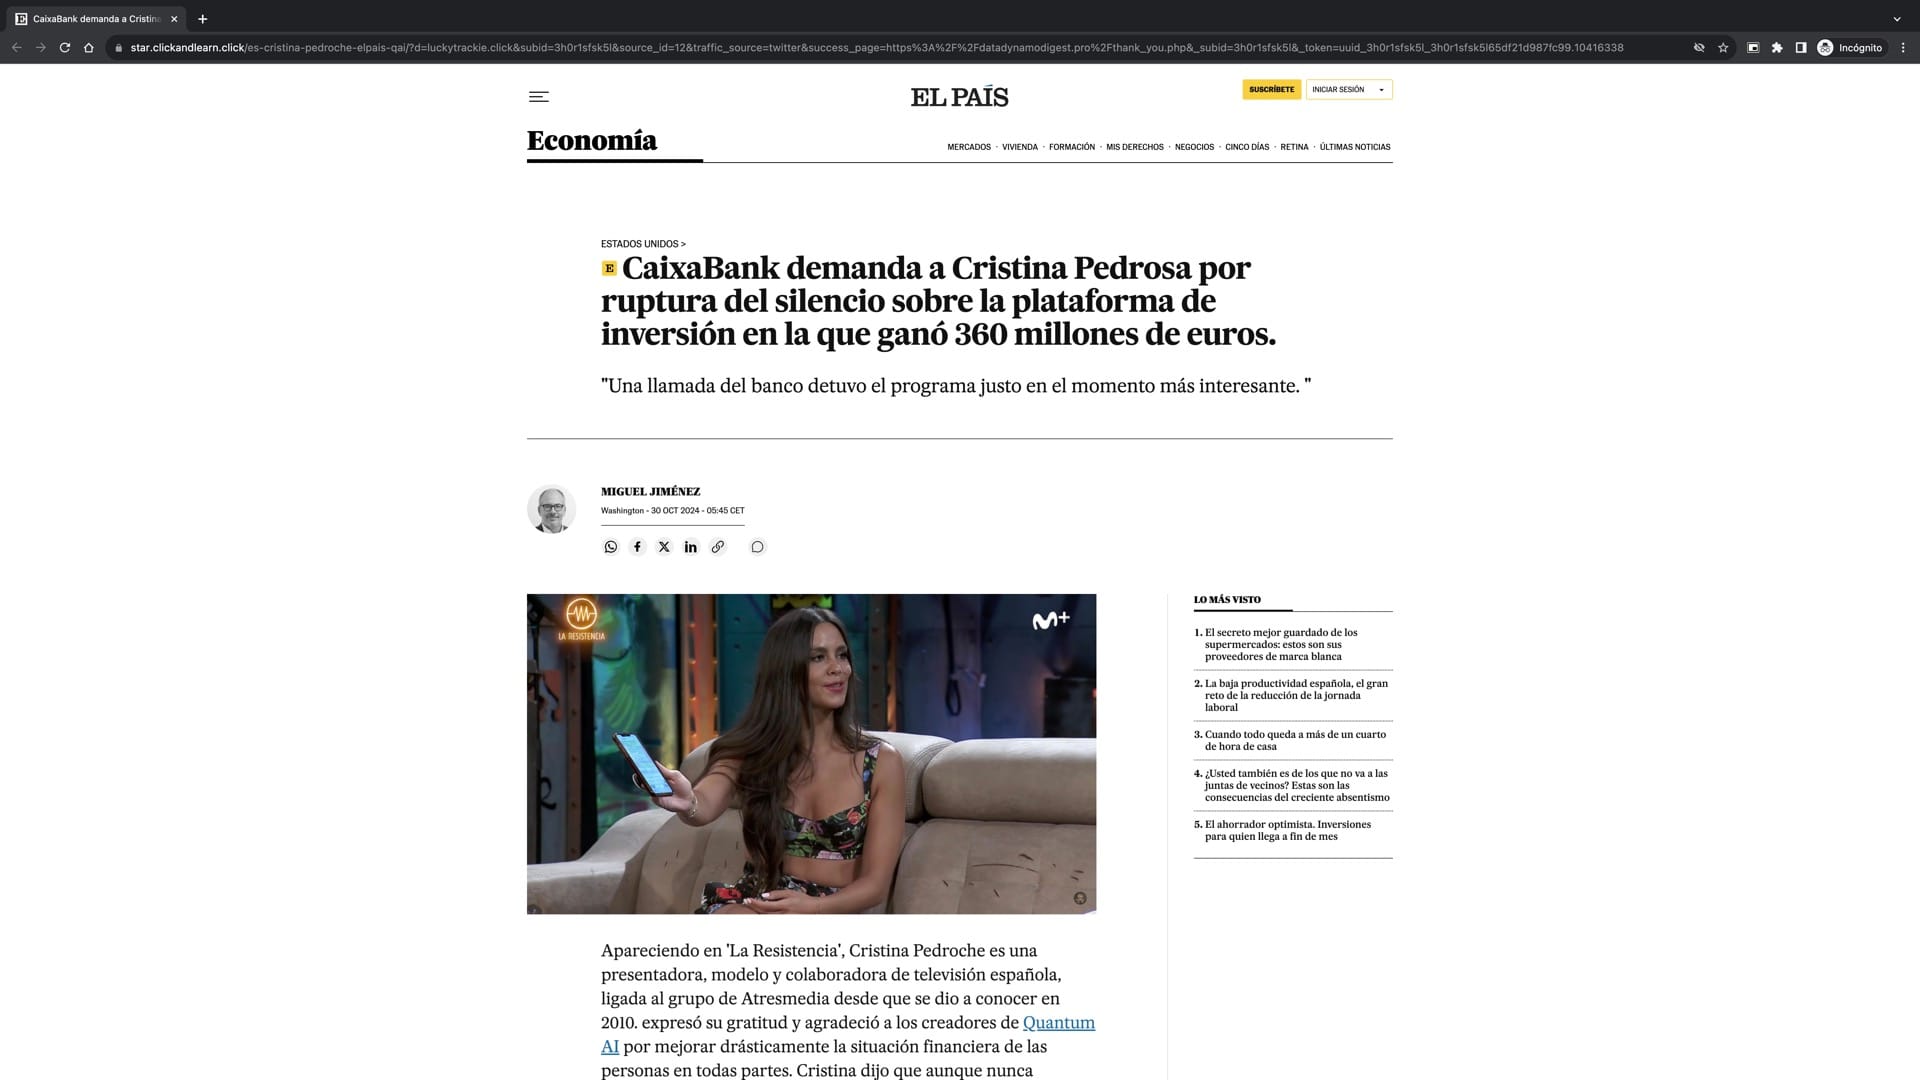 Captura de pantalla de la página web que suplanta la apariencia del periódico El País para tratar de engancharnos en esta estafa.